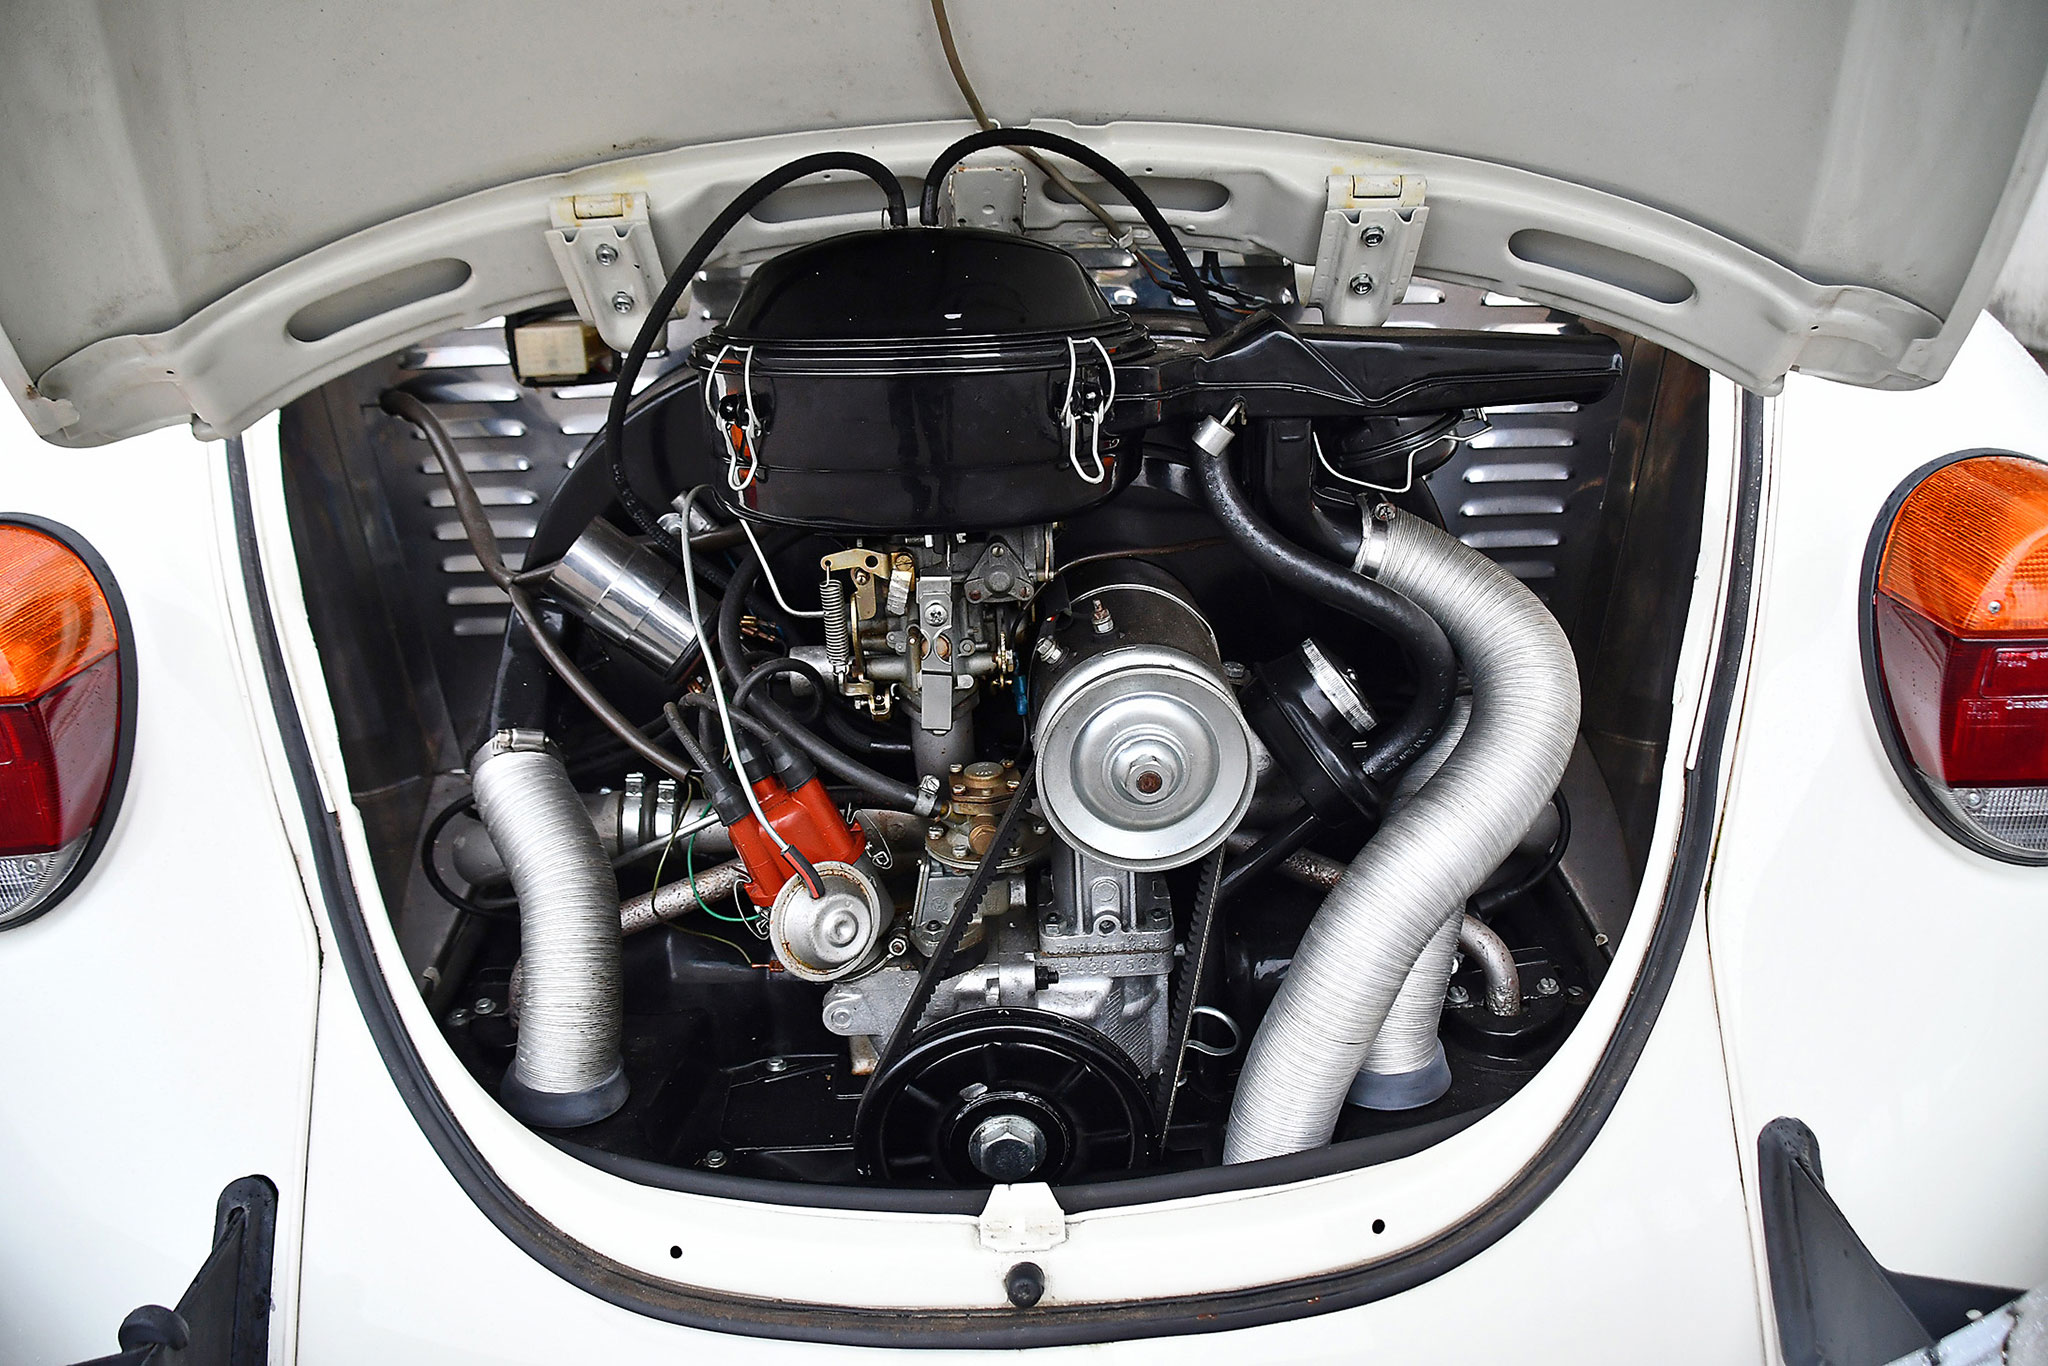 1973 Volkswagen Beetle 1303 – moteur de 1284 cm³ qui n’aurait parcouru que 71 500 kilomètres.